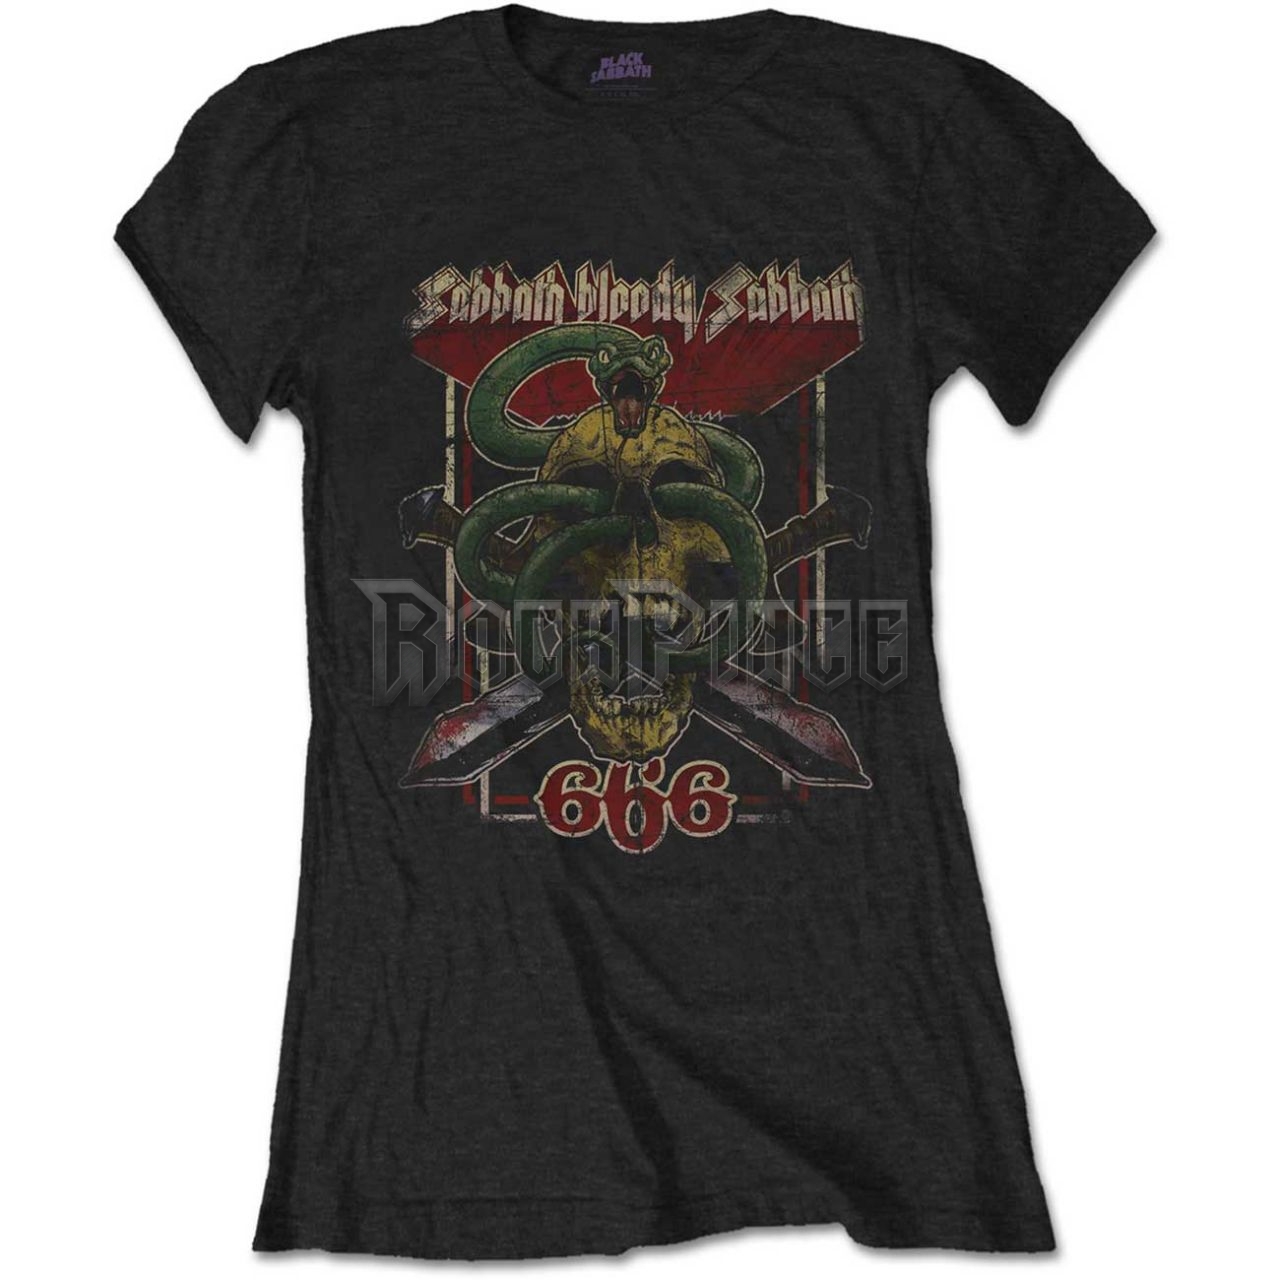 Black Sabbath - Bloody Sabbath 666 - női póló - BSTS32LB